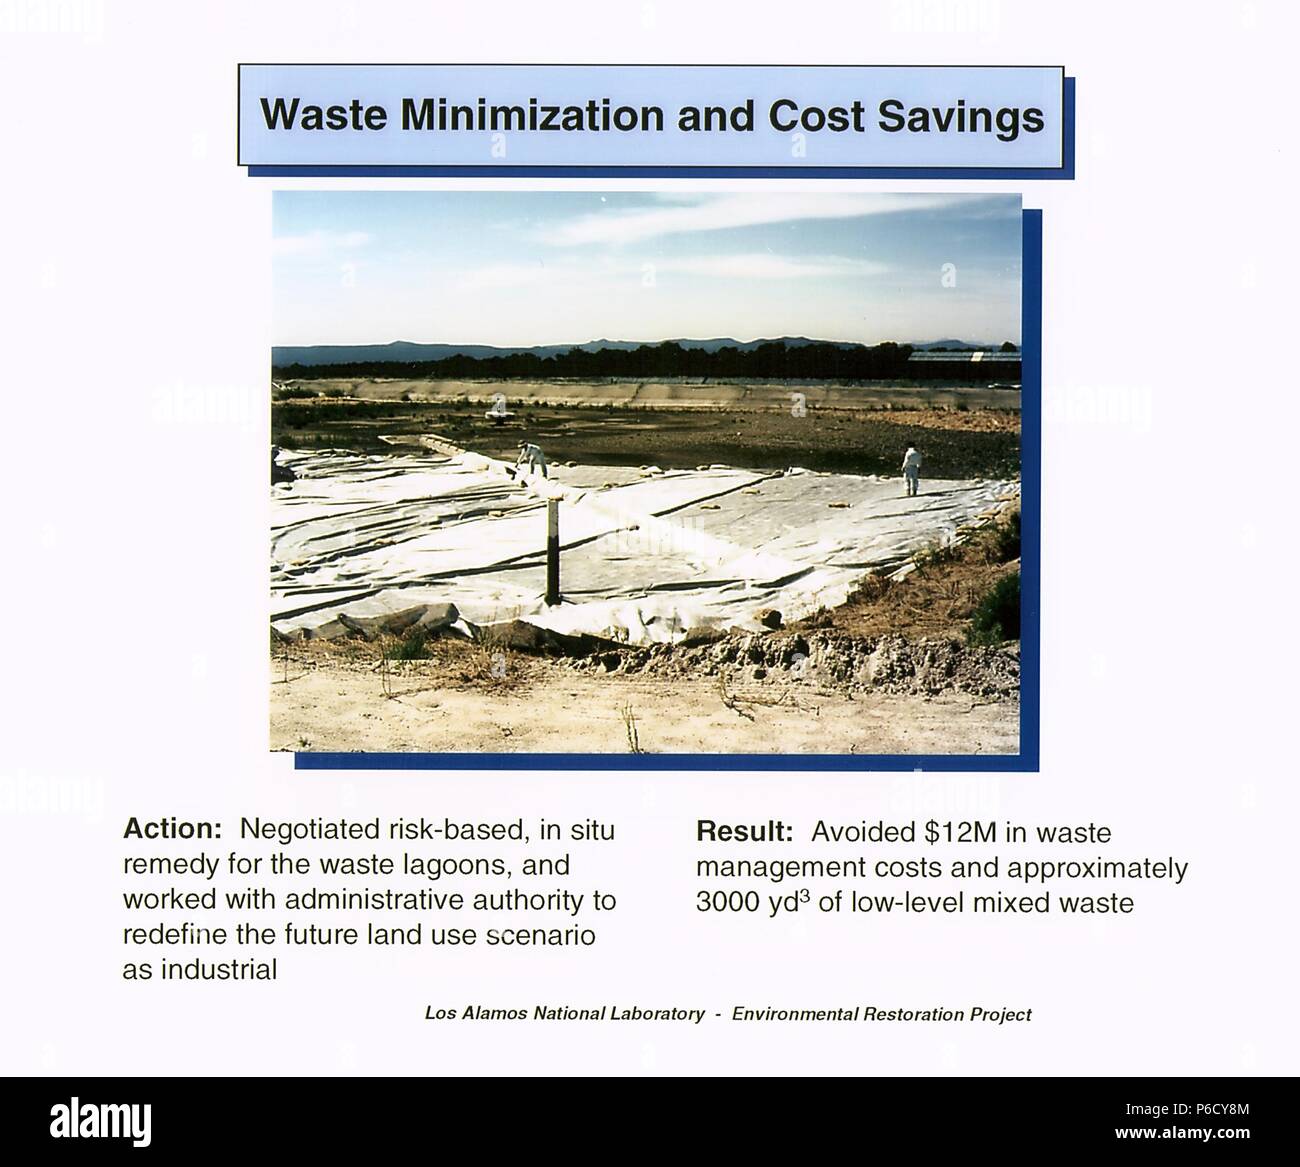 Abfallminimierung und Kosteneinsparungen Aktion Vorschlag des Los Alamos National Laboratory für die Sanierung von Umweltschäden Projekt, Los Alamos, New Mexico, 2016. Mit freundlicher Genehmigung des US-Ministeriums für Energie. () Stockfoto